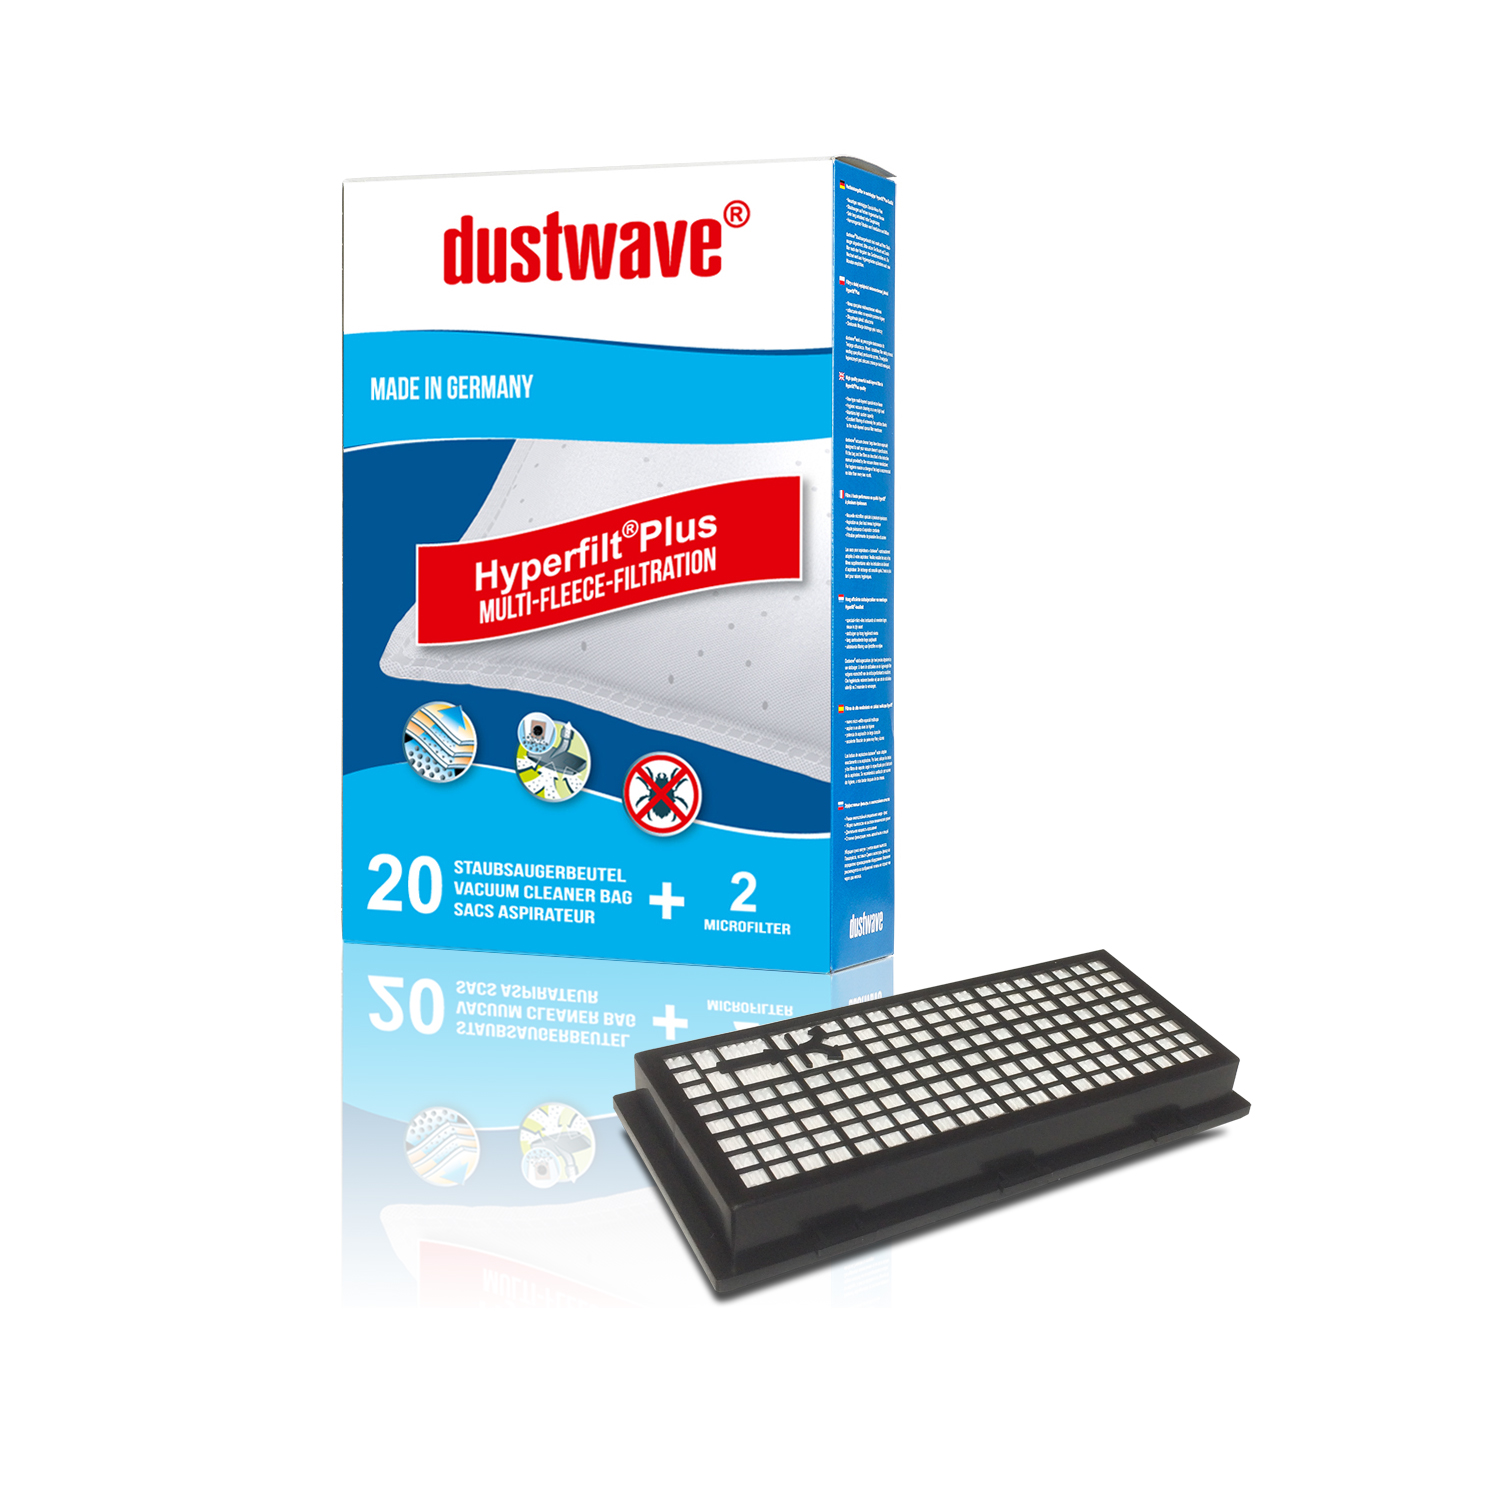 20 Staubbeutel + HEPA-Filter (808) passend für Miele - S858 Bodenstaubsauger - dustwave® Markenstaubbeutel Made in Germany